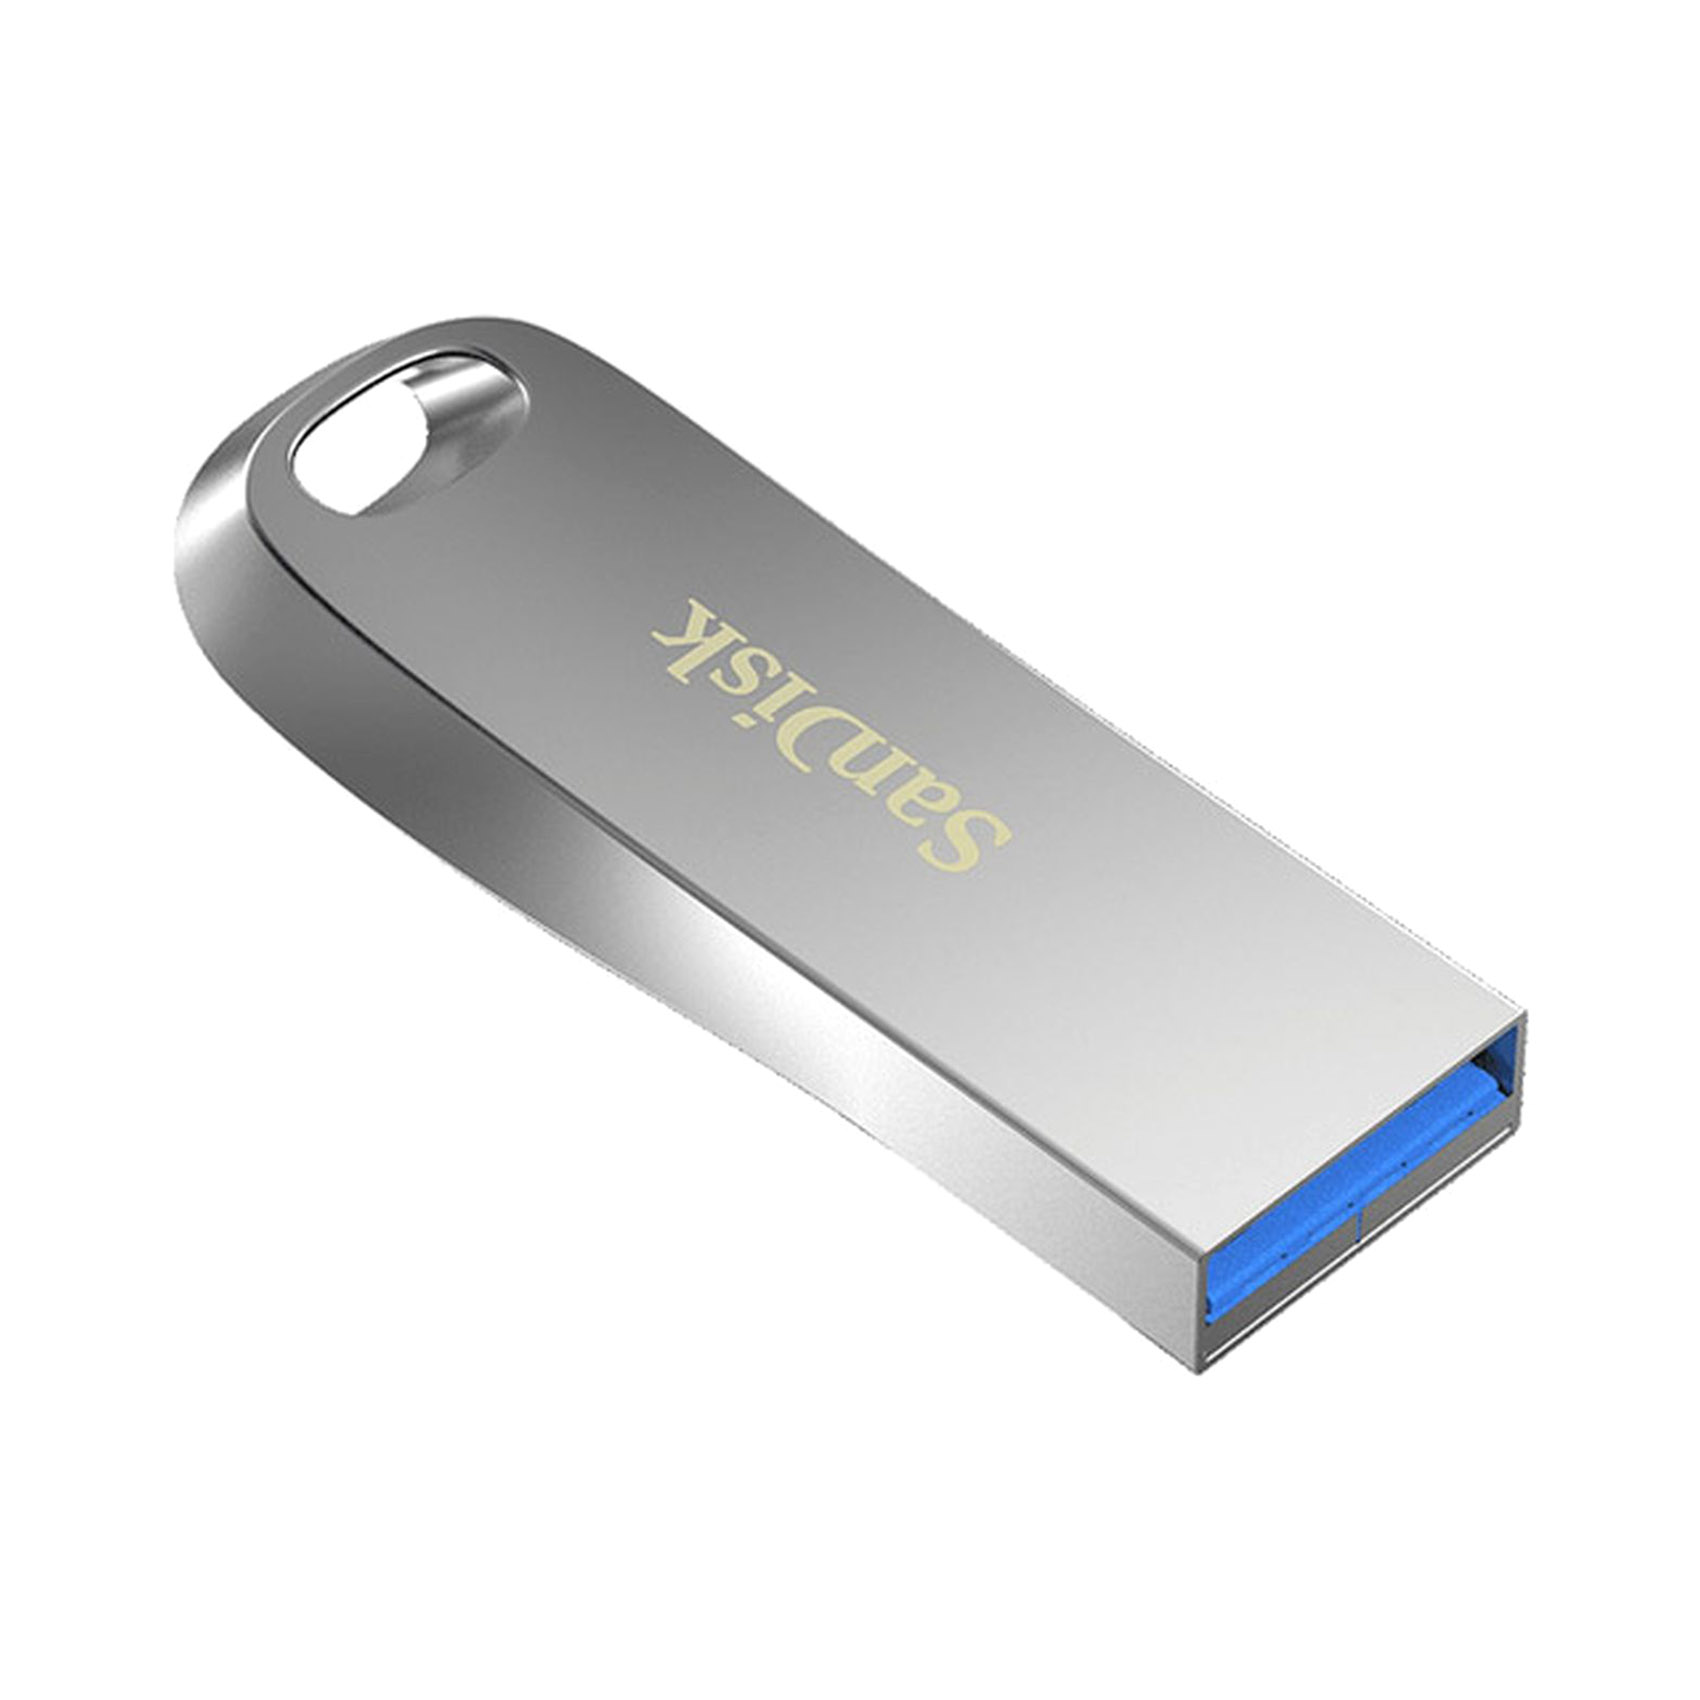 سانديسك الترا لوكس ذاكرة البيانات USB 32 جيغا بايت - فضي